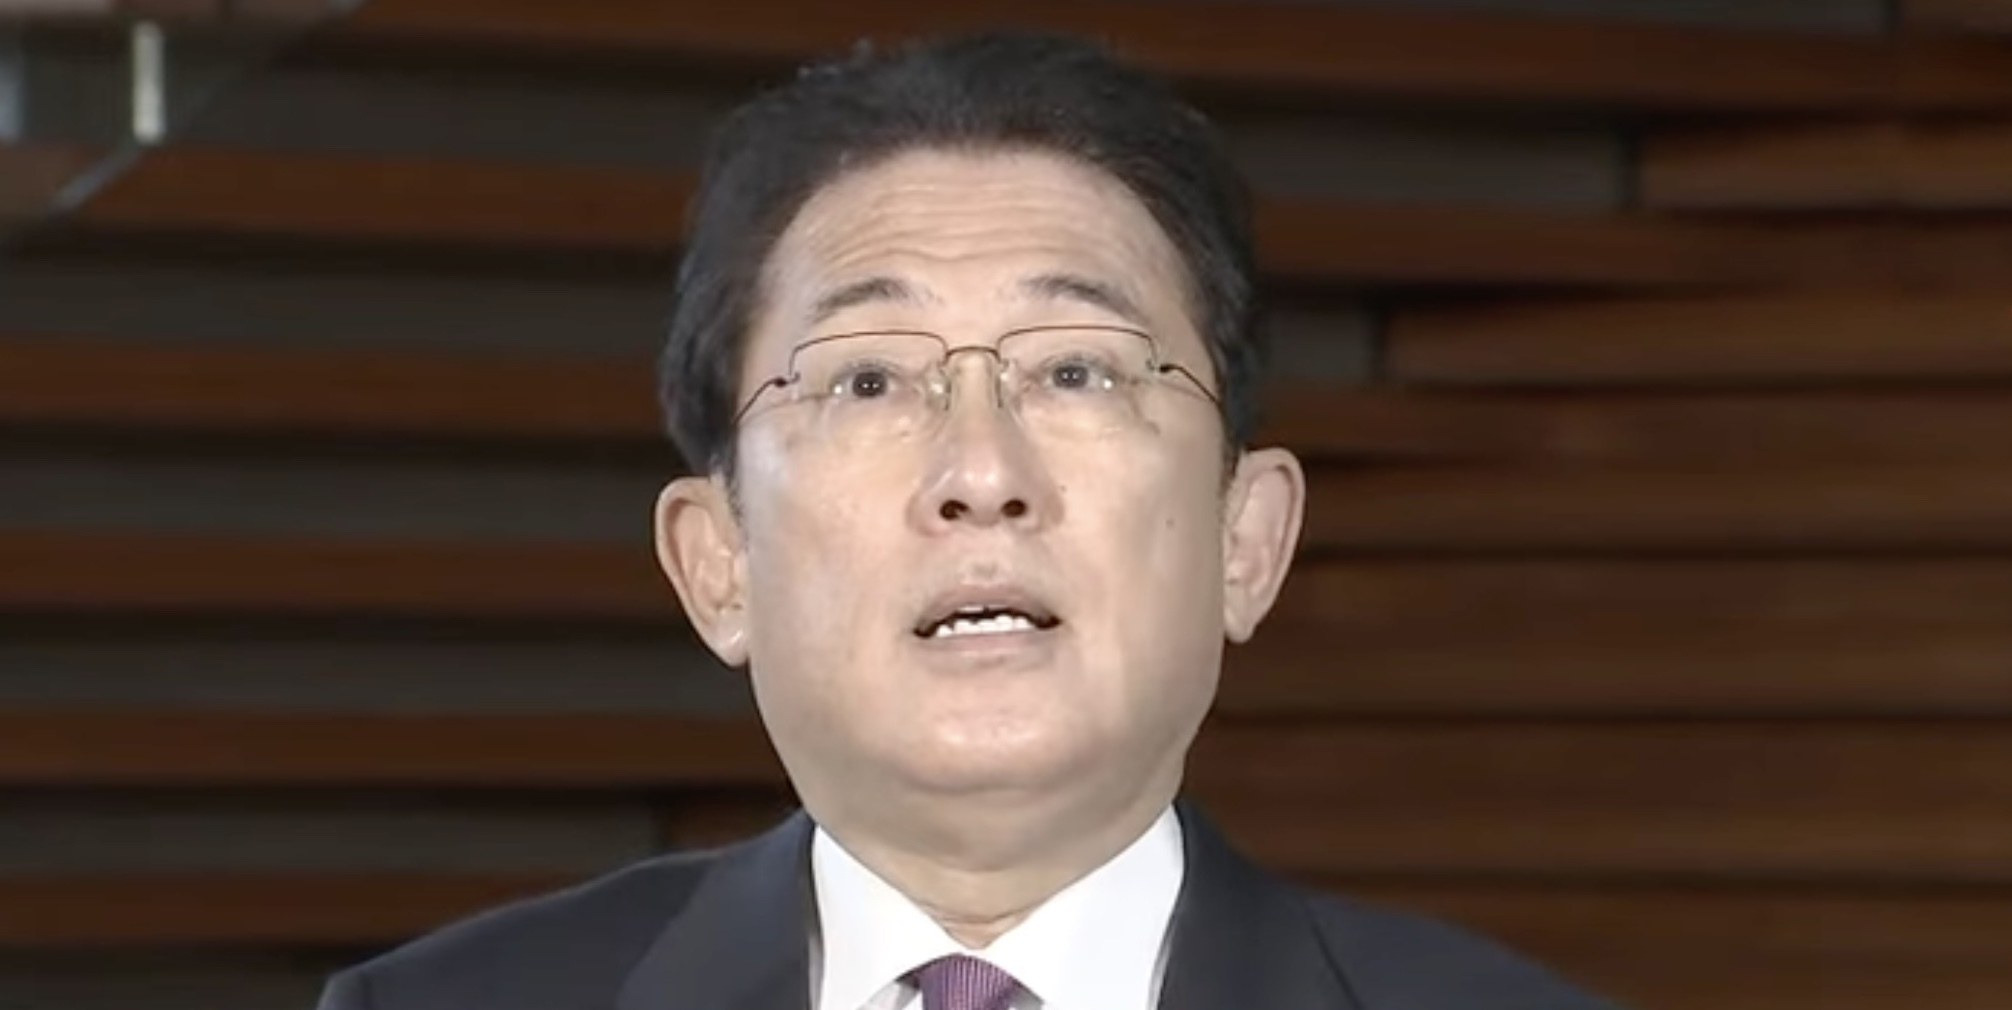 「期待外れだった」歴代首相ランキング、鳩山由紀夫氏を抑えて岸田首相が１位に